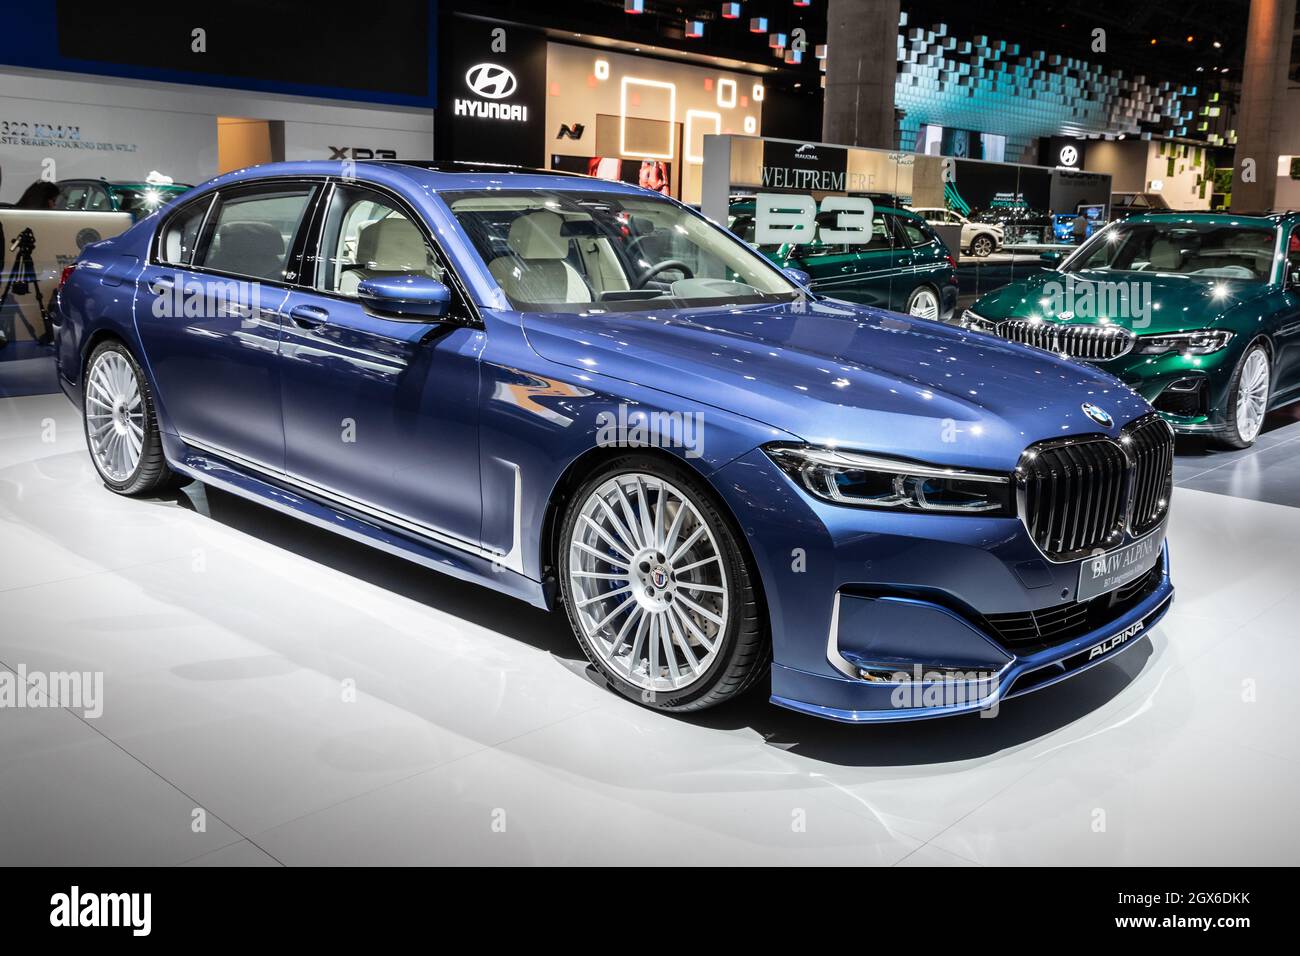 La voiture BMW Alpina B7 Langversion Allrad a été présentée au salon de l'automobile IAA de Francfort. Allemagne - 11 septembre 2019 Banque D'Images